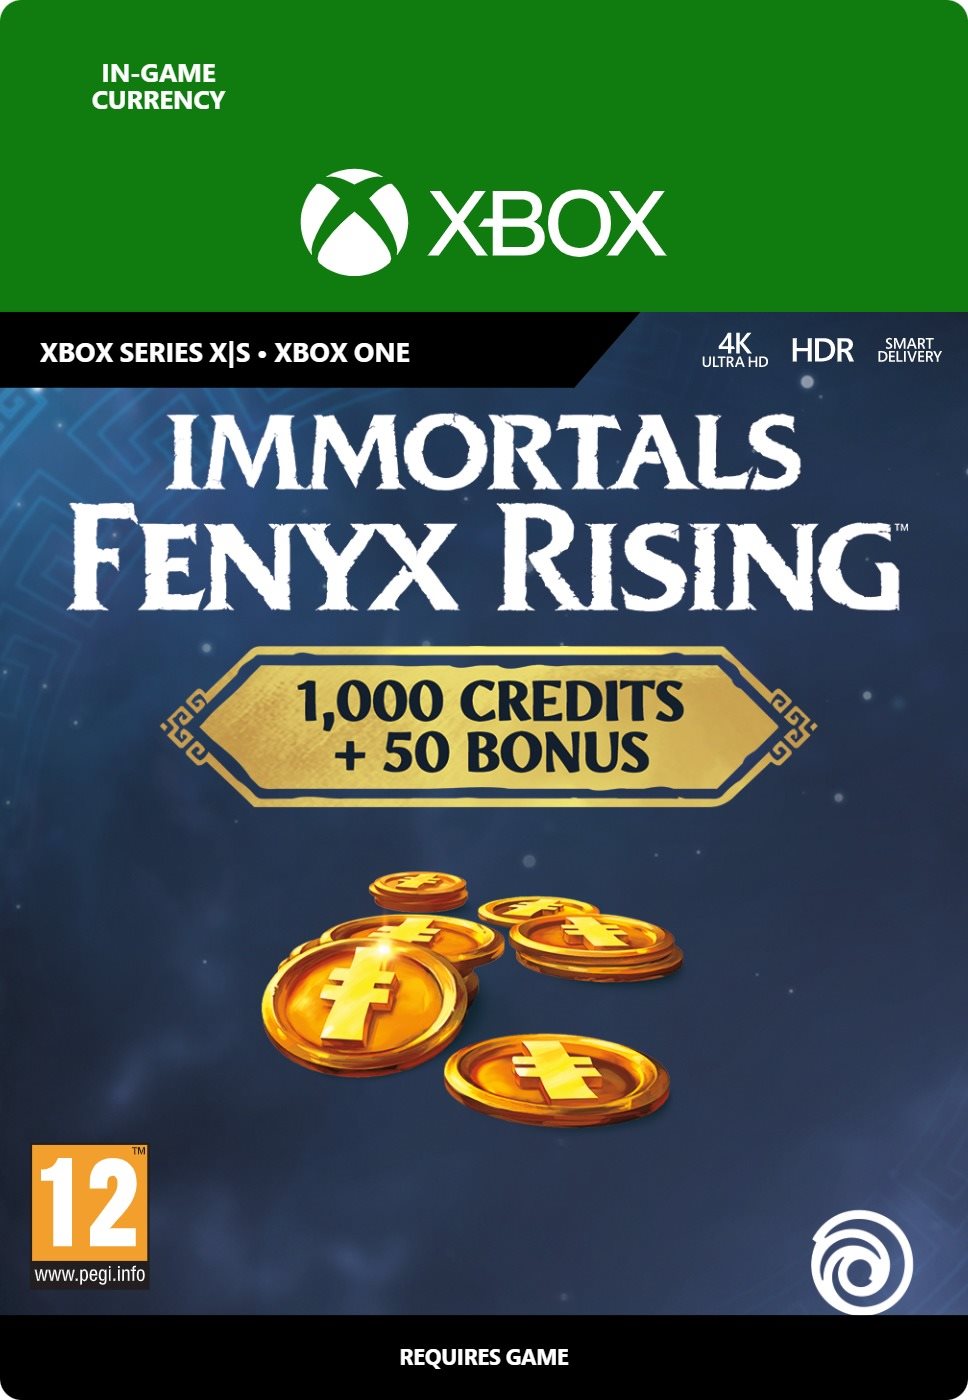 Immortals: Fenyx Rising - Medium Credits Pack (1050) - Xbox Digital